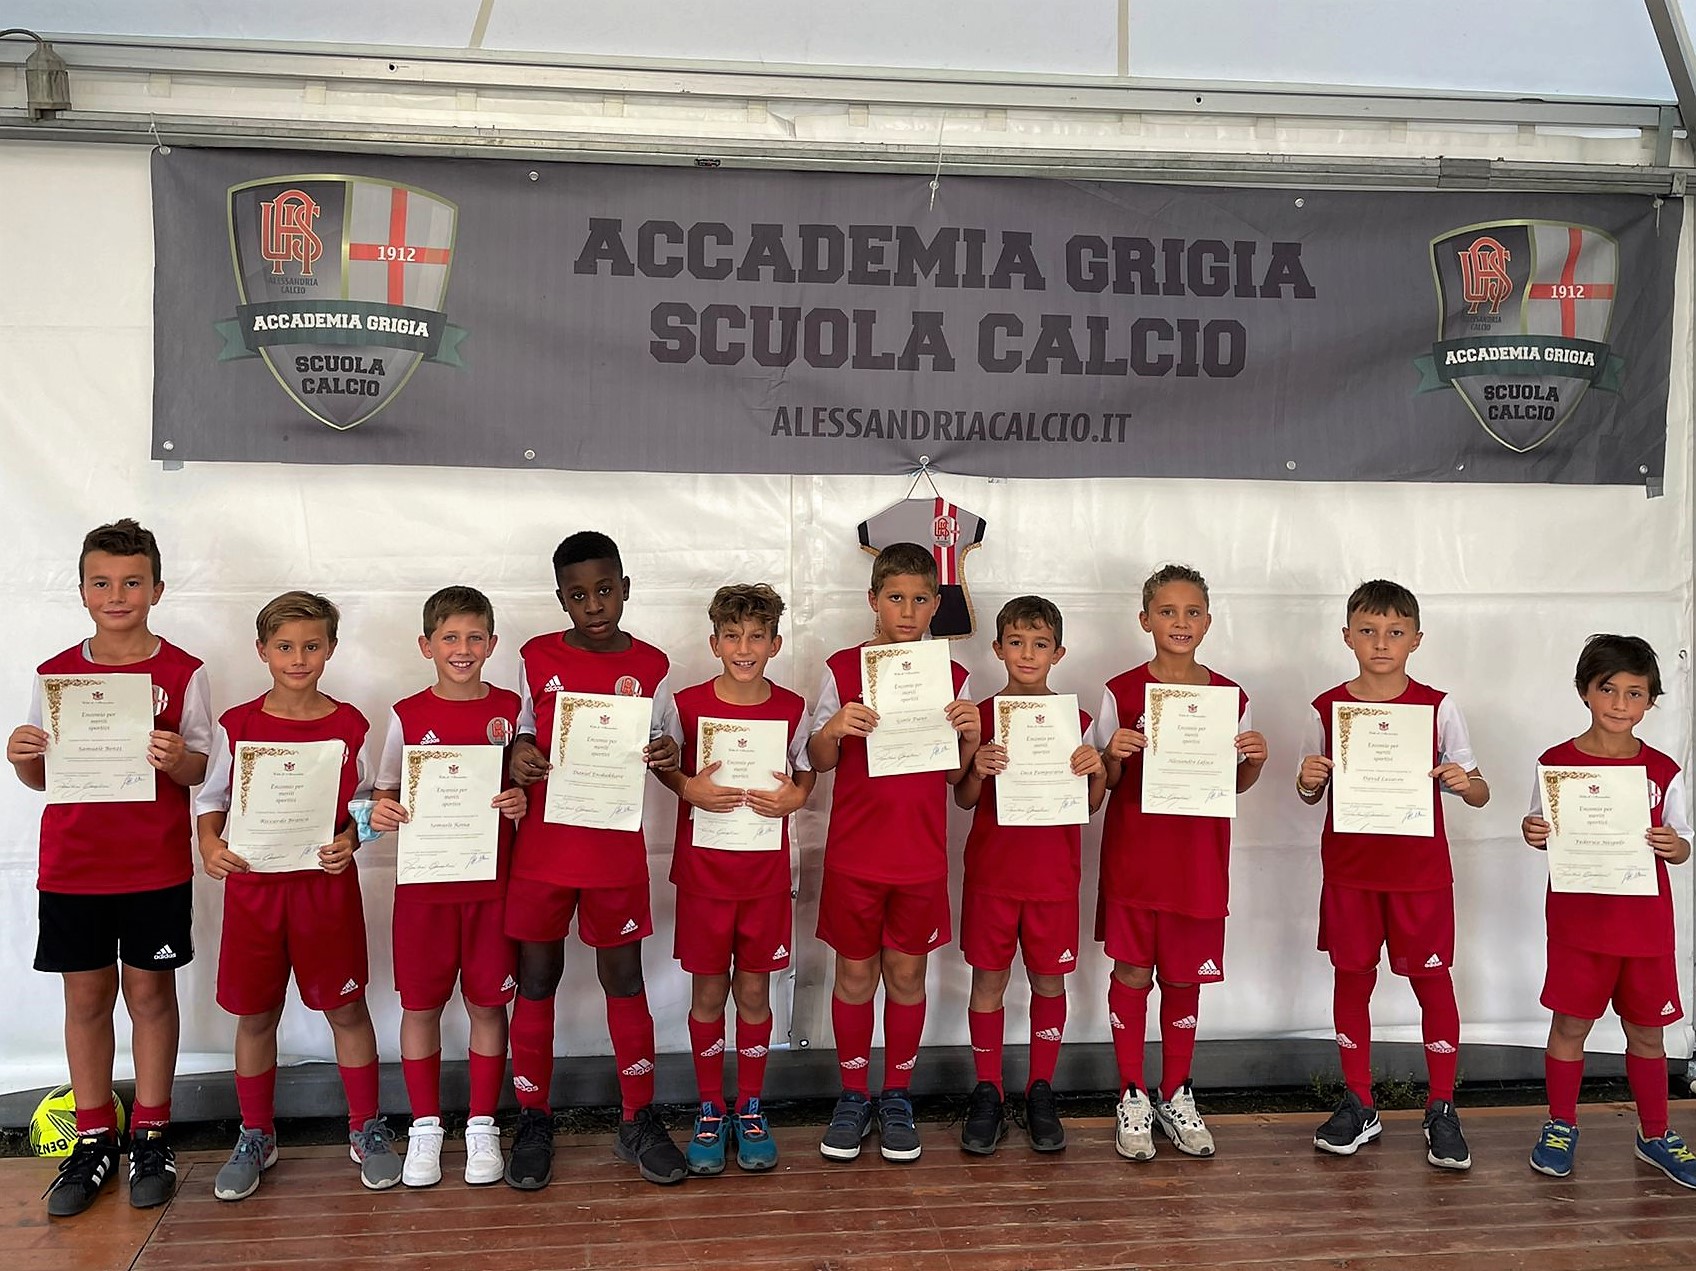 Premiata la Scuola Calcio Accademia Grigia.